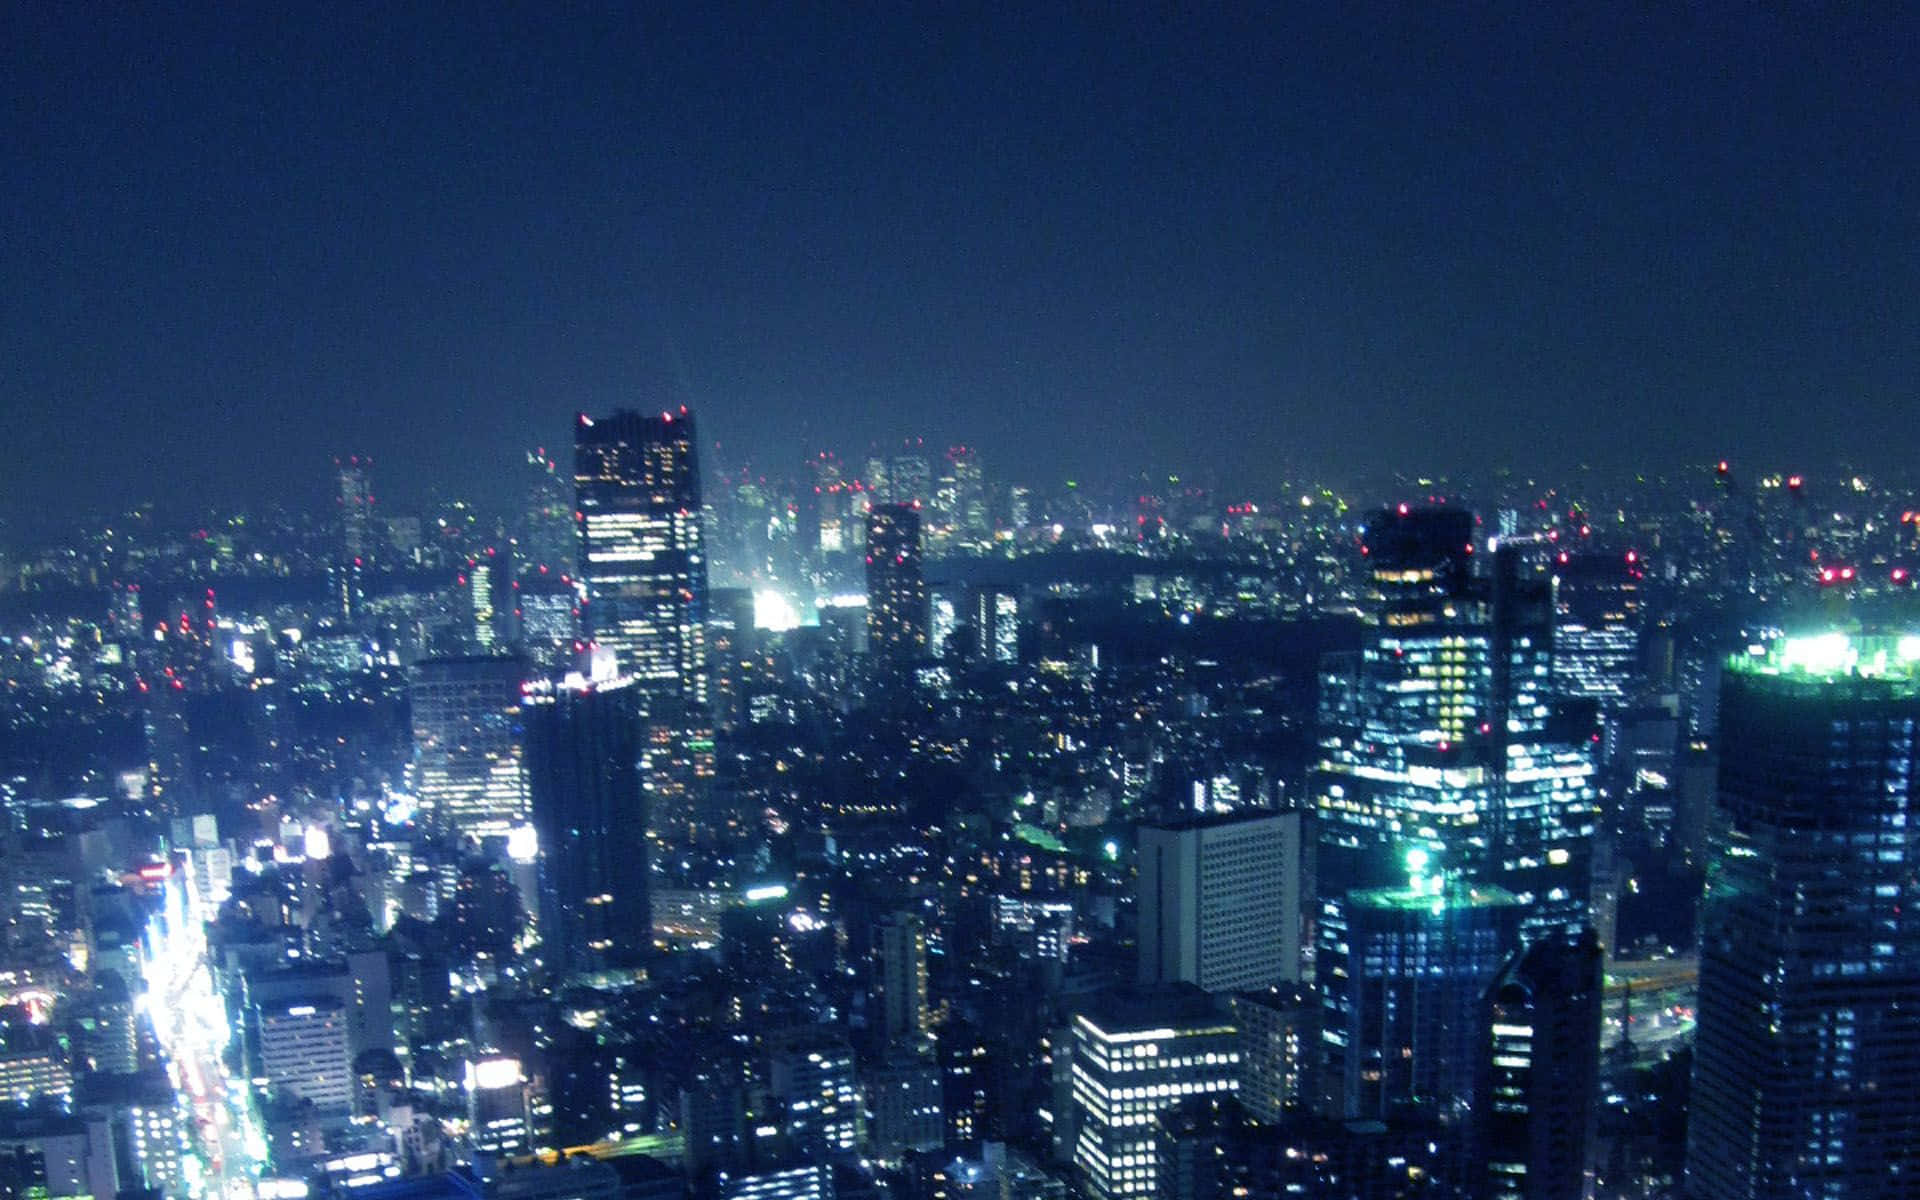 Baggrundaf Tokyo - En Lys Fyldt By.